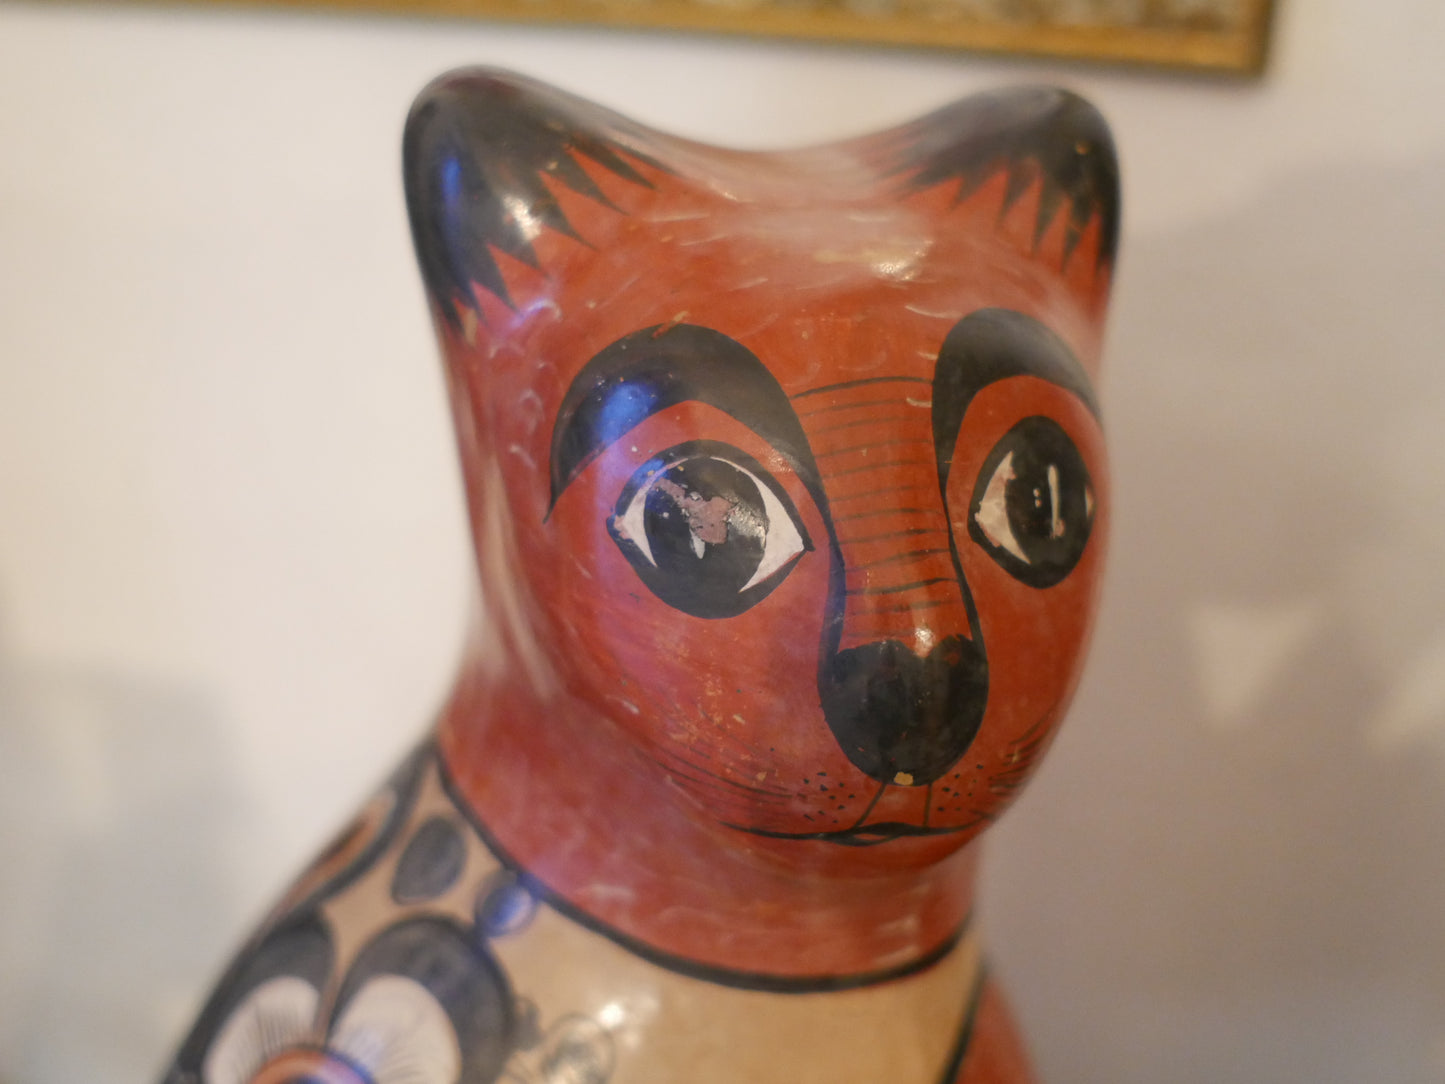 メキシコ民芸品 トナラ焼 猫の置き物 Mexico 民藝